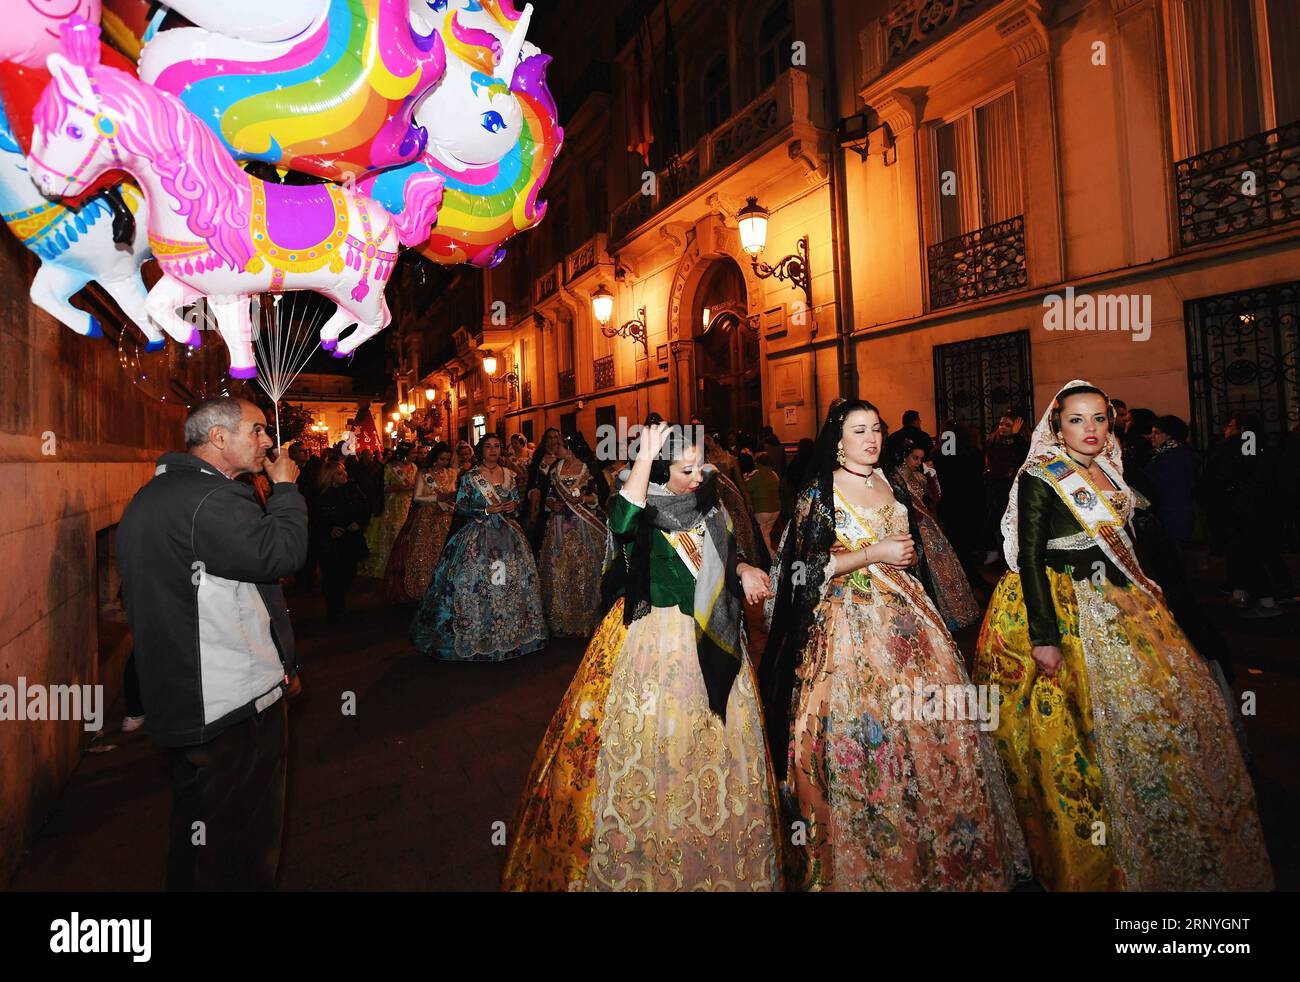 (180319) -- VALENCIA, 19. März 2018 -- Menschen in traditioneller Kleidung nehmen an der Fallas Festival Parade in den Straßen von Valencia, Spanien, am 18. März 2018 Teil. Das Fallas Festival ist ein traditionelles fest mit einer Ausstellung von gigantischen Puppen, gut gekleideten Paraden und Feuerwerken in Valencia, Spanien. )(yk) SPANIEN-VALENCIA-DAS FALLAS FESTIVAL GuoxQiuda PUBLICATIONxNOTxINxCHN Stockfoto